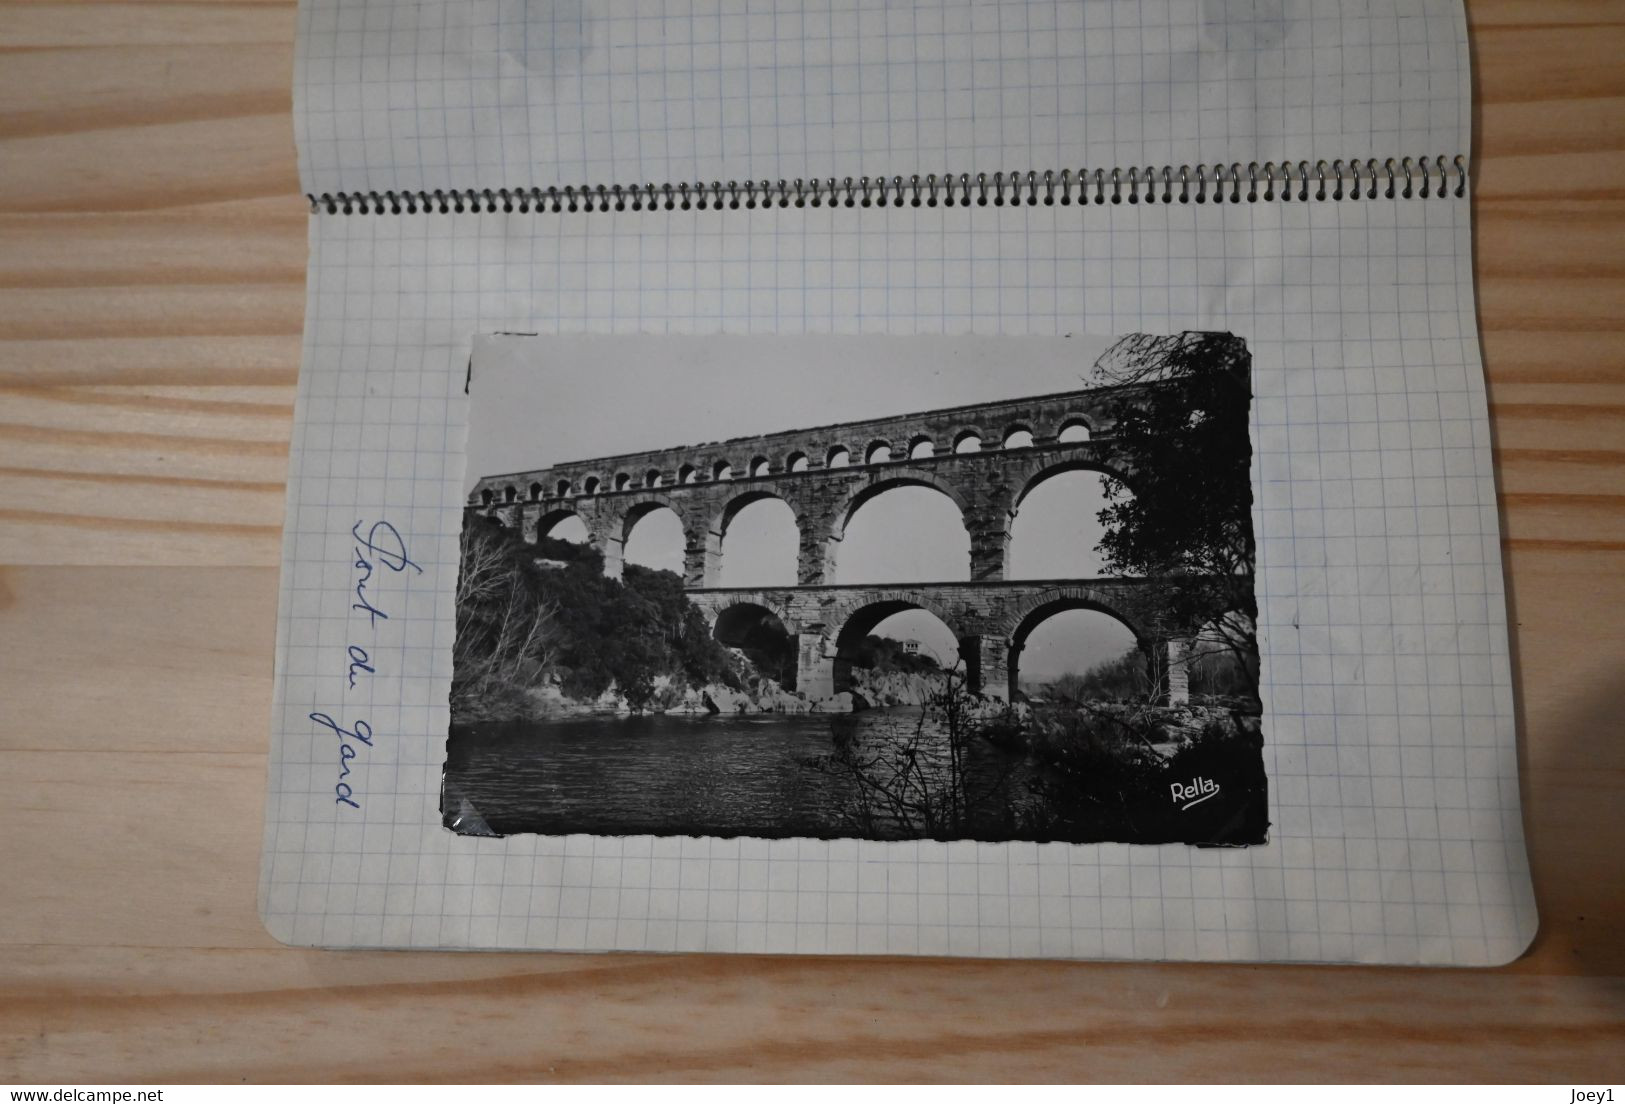 Carnet photos et cartes postales, vacances 1957,Gorges du Tarn, Cerbères, Normandie,La Champagne ect